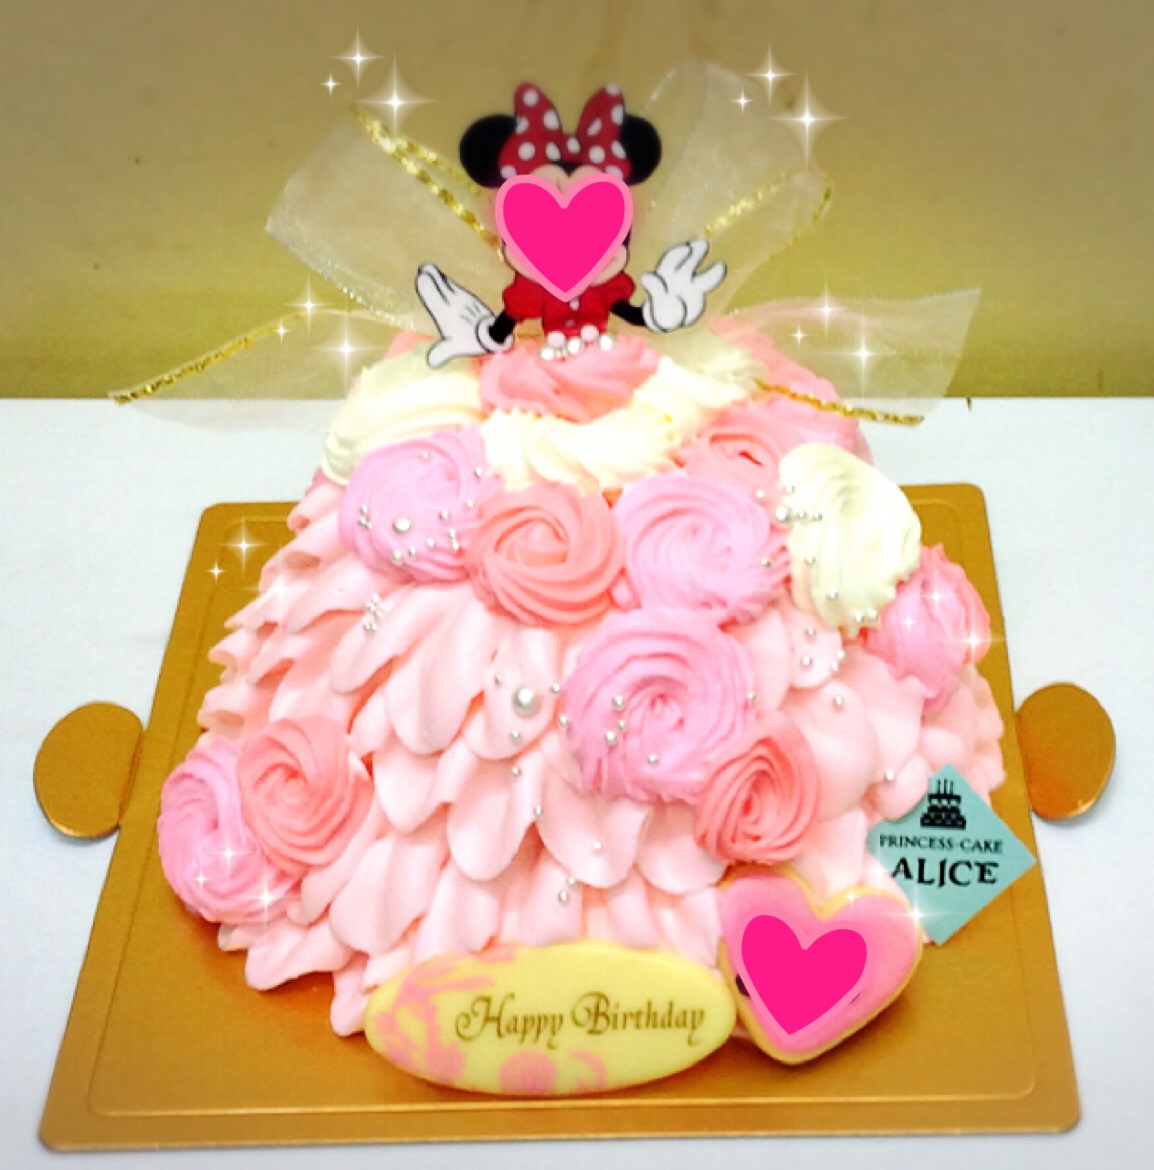 かわいいドレスのケーキ 大阪なんば オーダーケーキ 大阪でオーダーケーキなら大阪ミナミ なんば 心斎橋の宅配ケーキ プリンセスケーキアリス